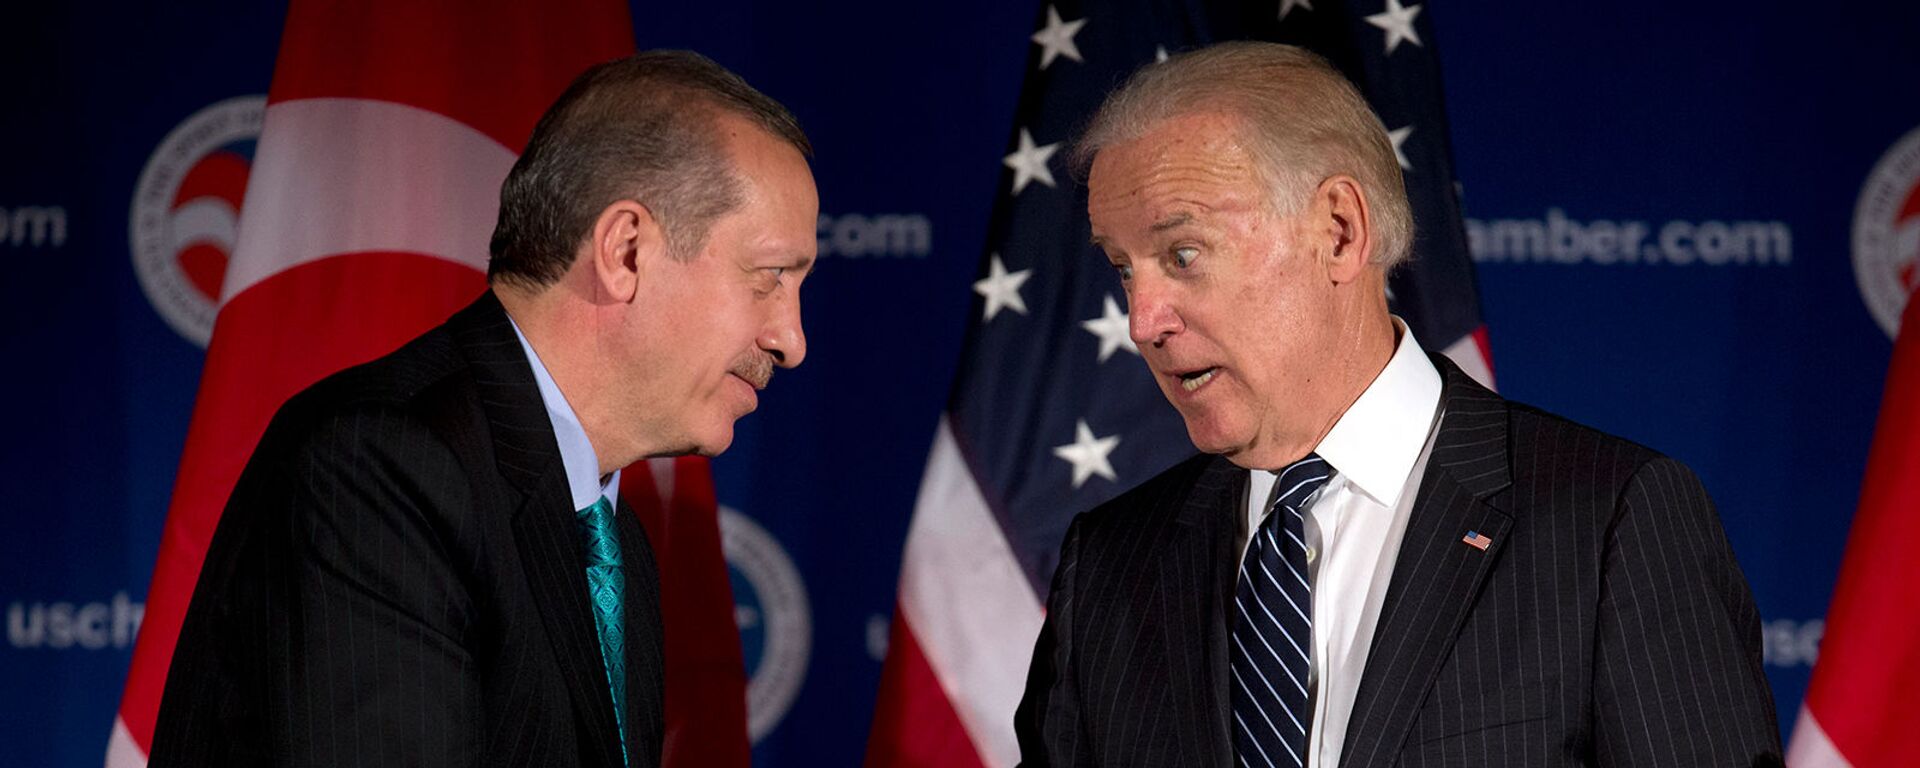 Вице-президент США Джо Байден и премьер-министр Турции Реджеп Тайип Эрдоган приветствуют друг друга во время круглого стола, организованного Торговой палатой США (16 мая 2013). Вашингтон - Sputnik Արմենիա, 1920, 27.04.2021